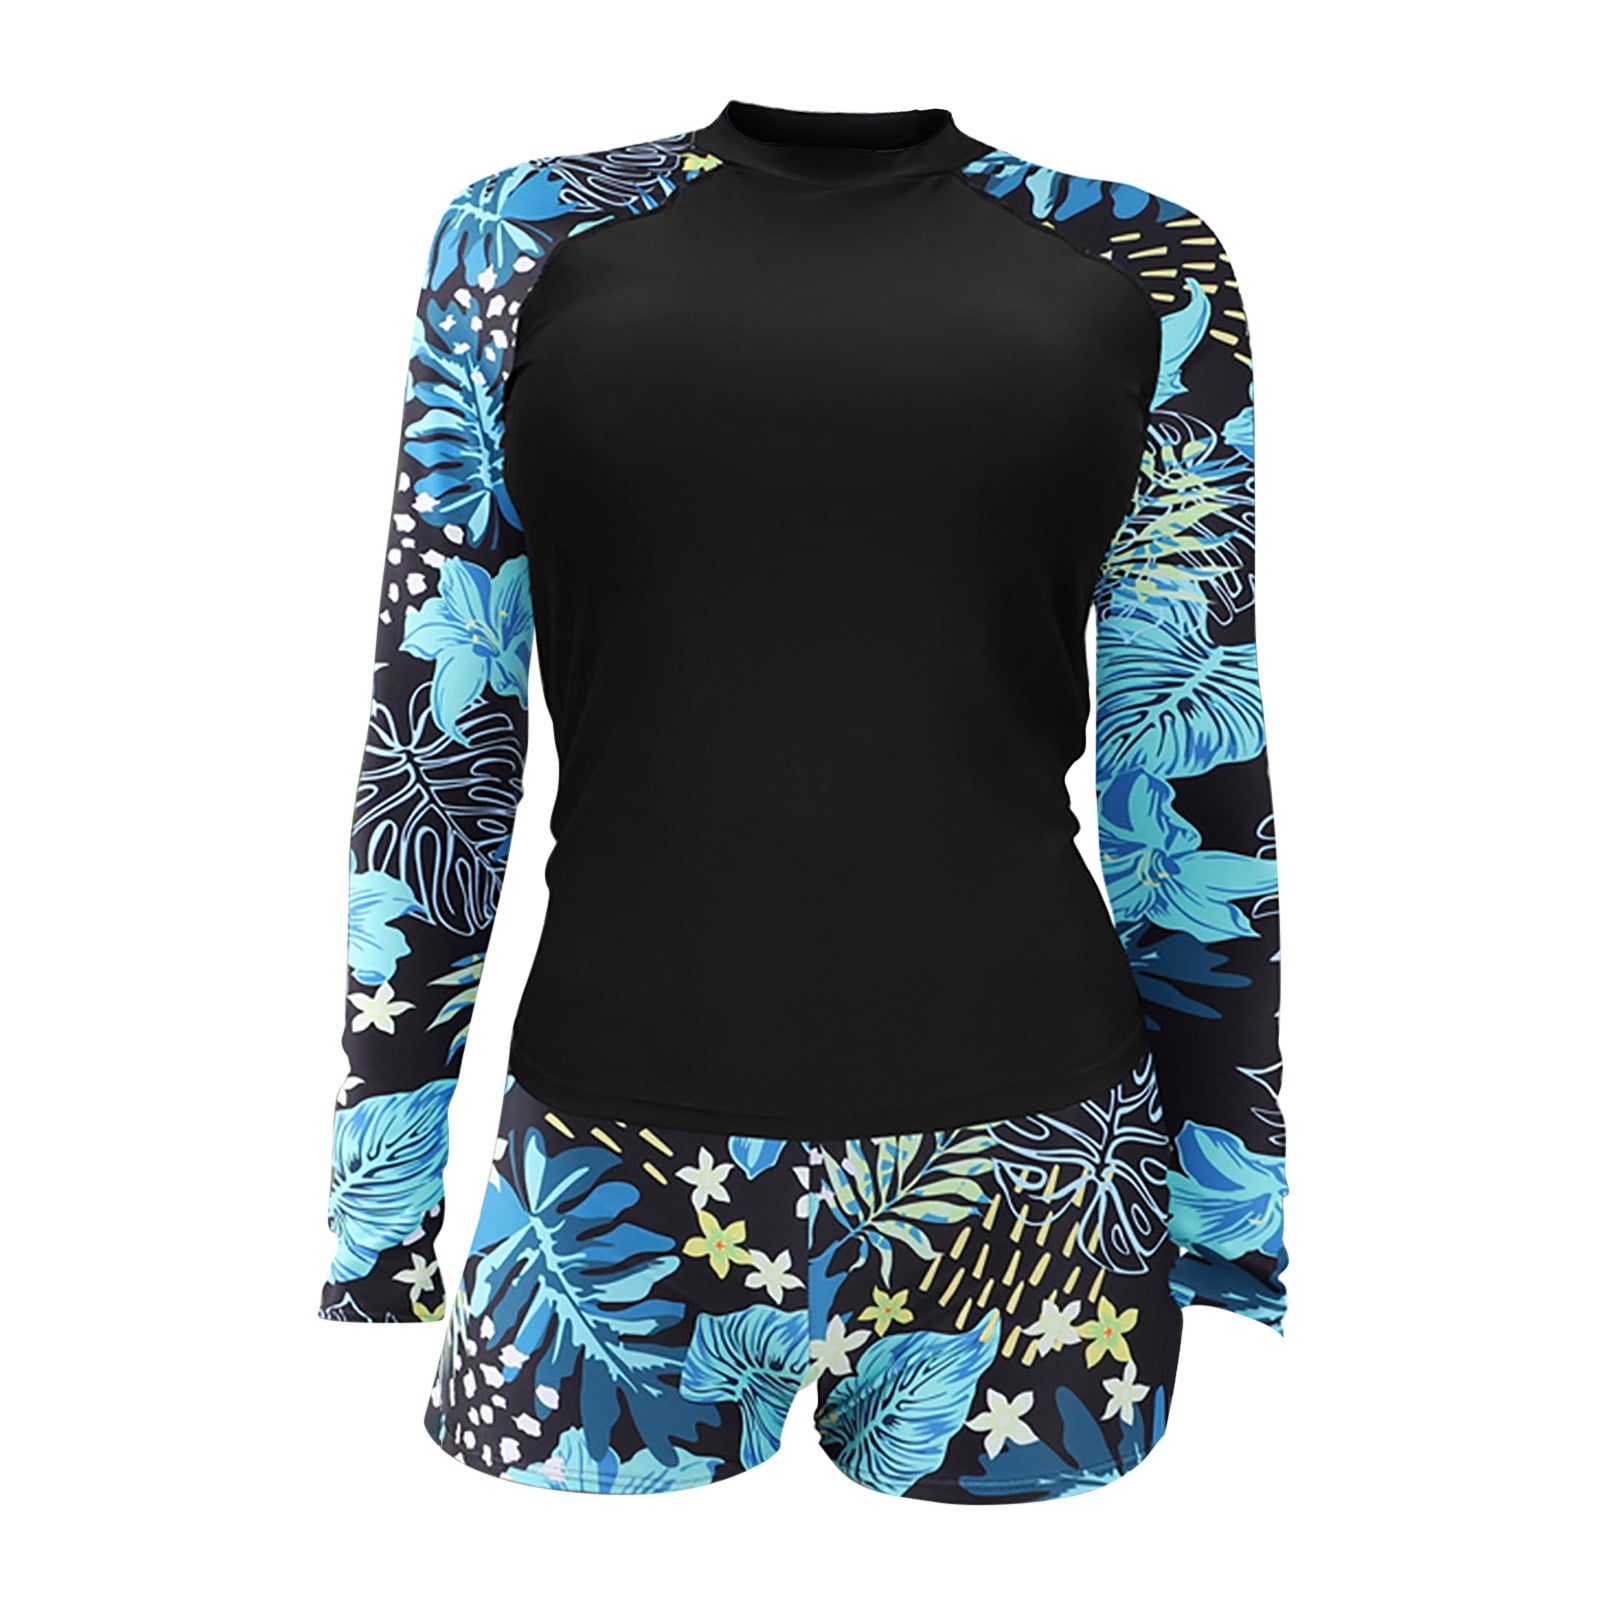 2DXuixsh Women's Board Shorts Swimwear Set Long Sleeve Split Swimsuit ...